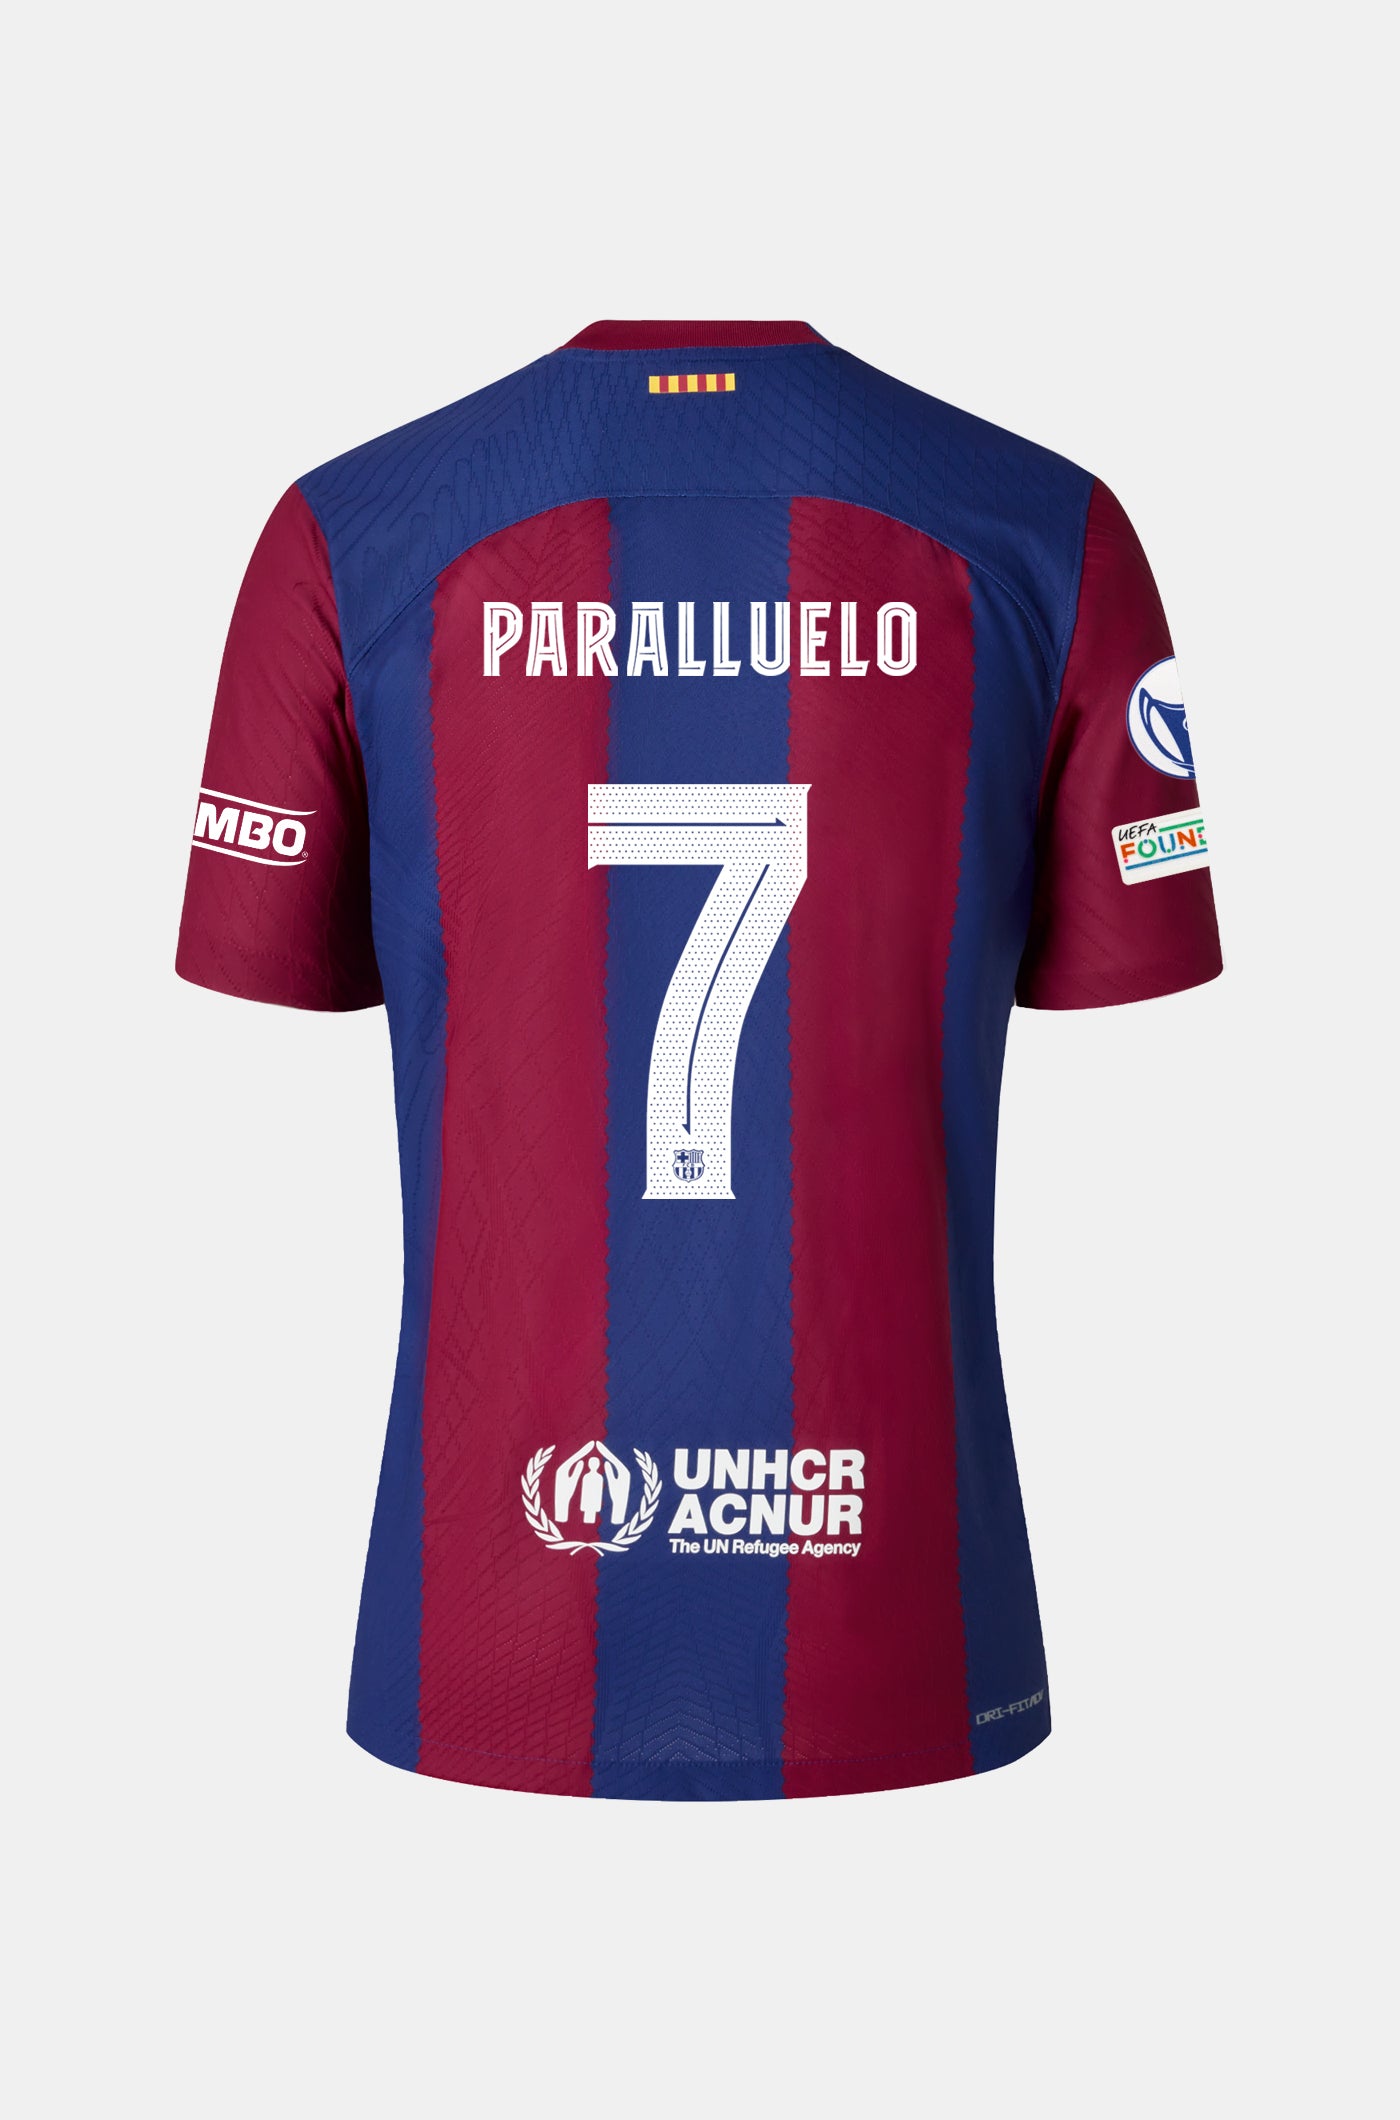 UWCL Samarreta primer equipament FC Barcelona 23/24 - Dona - PARALLUELO